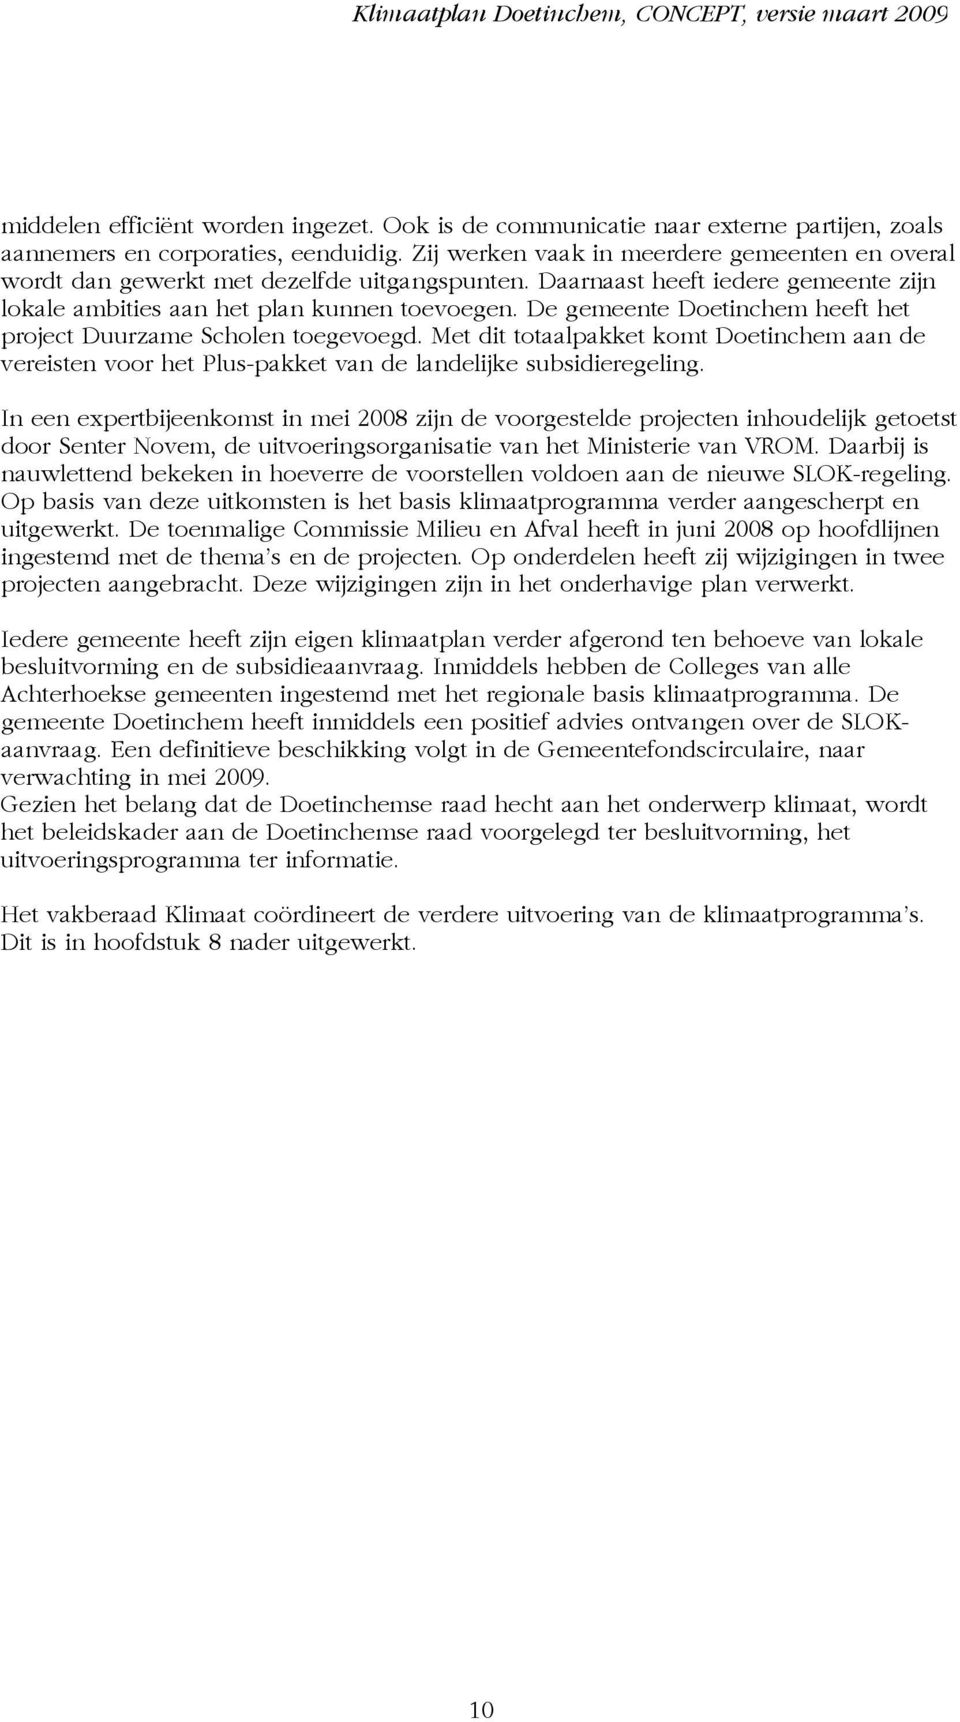 De gemeente Doetinchem heeft het project Duurzame Scholen toegevoegd. Met dit totaalpakket komt Doetinchem aan de vereisten voor het Plus-pakket van de landelijke subsidieregeling.